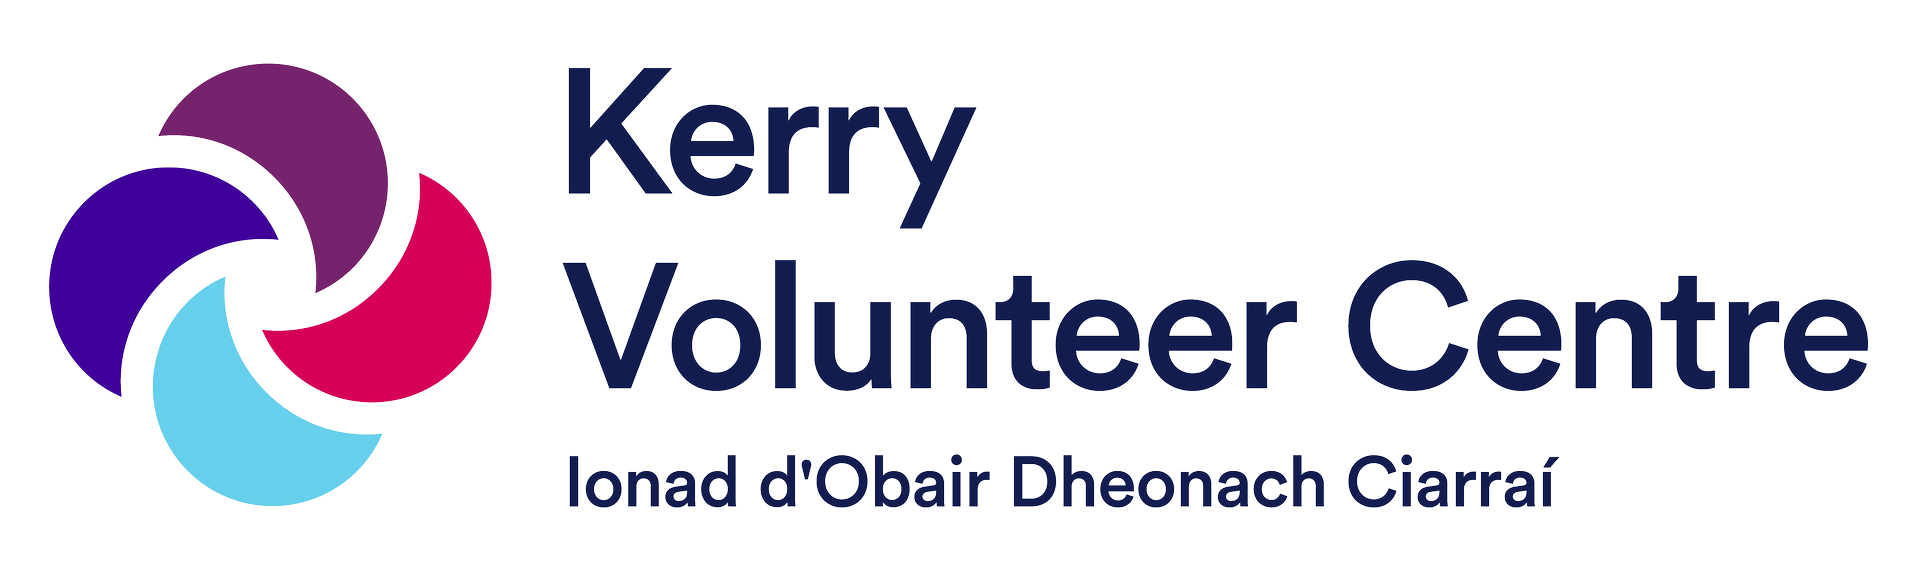 Kerry Volunteer Centre